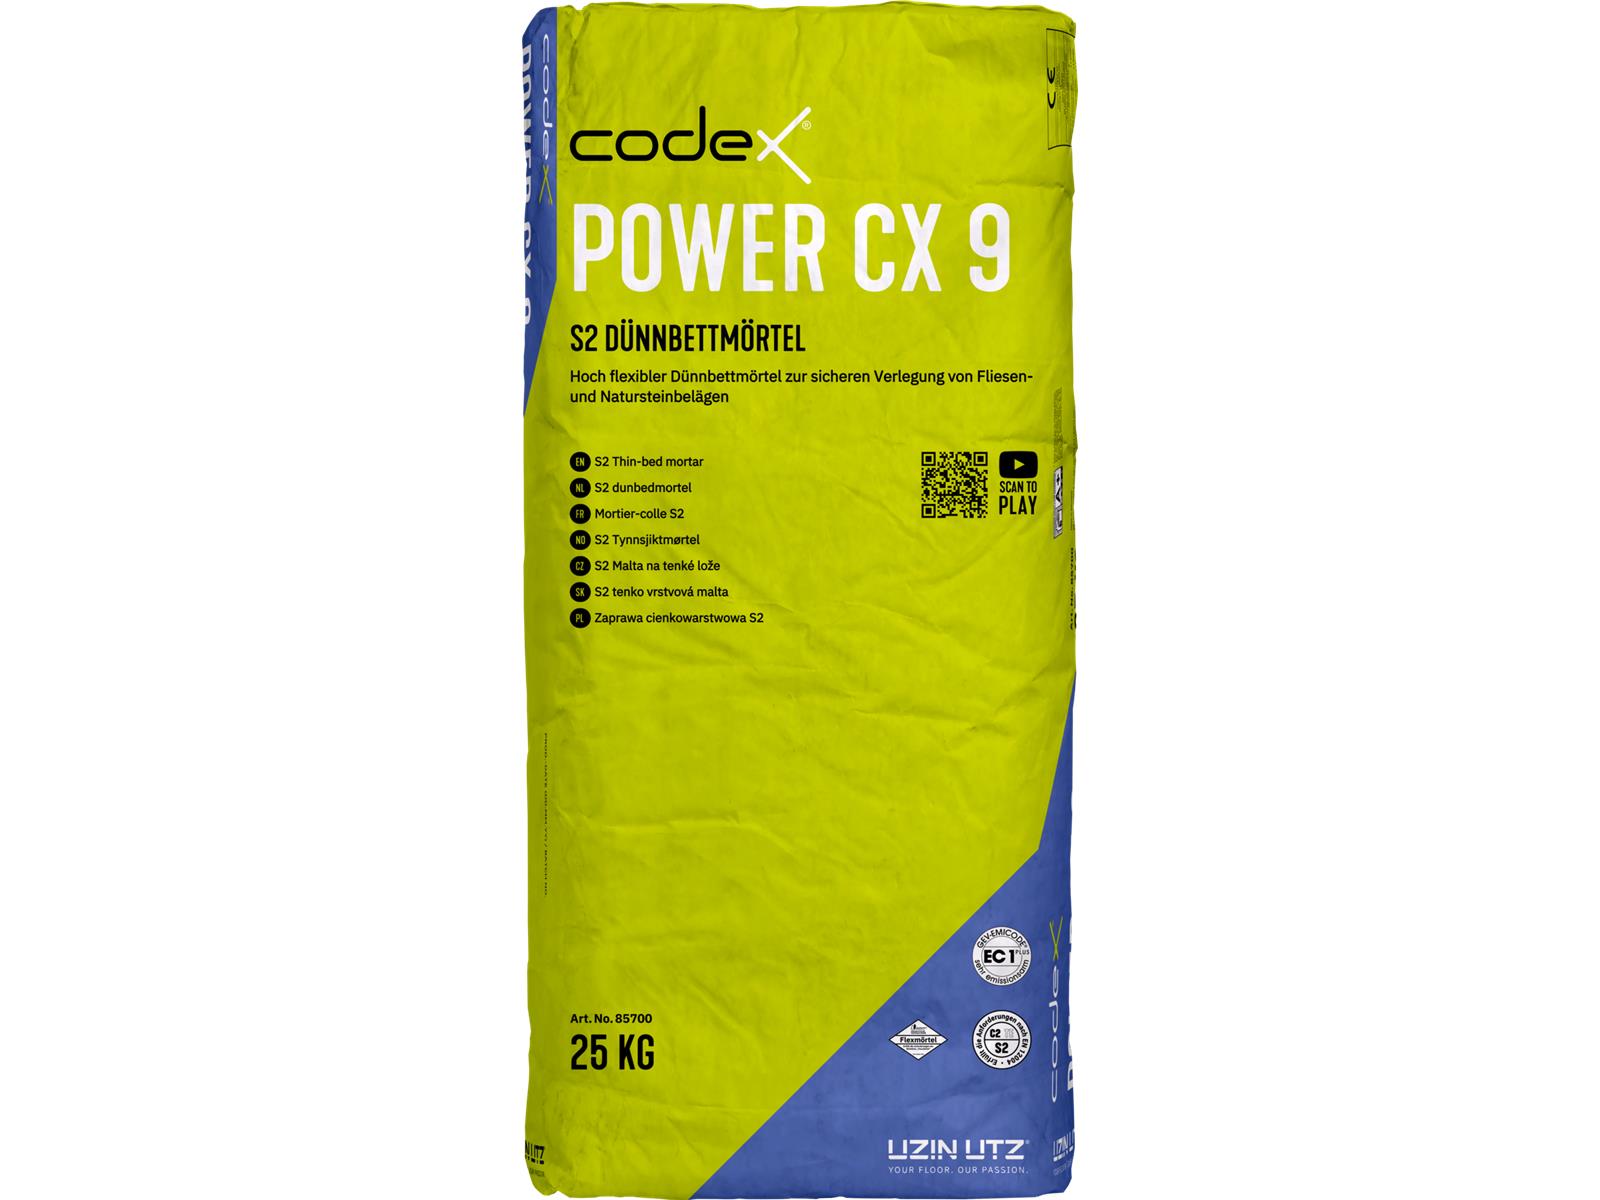 codex Power CX 9-25 kg